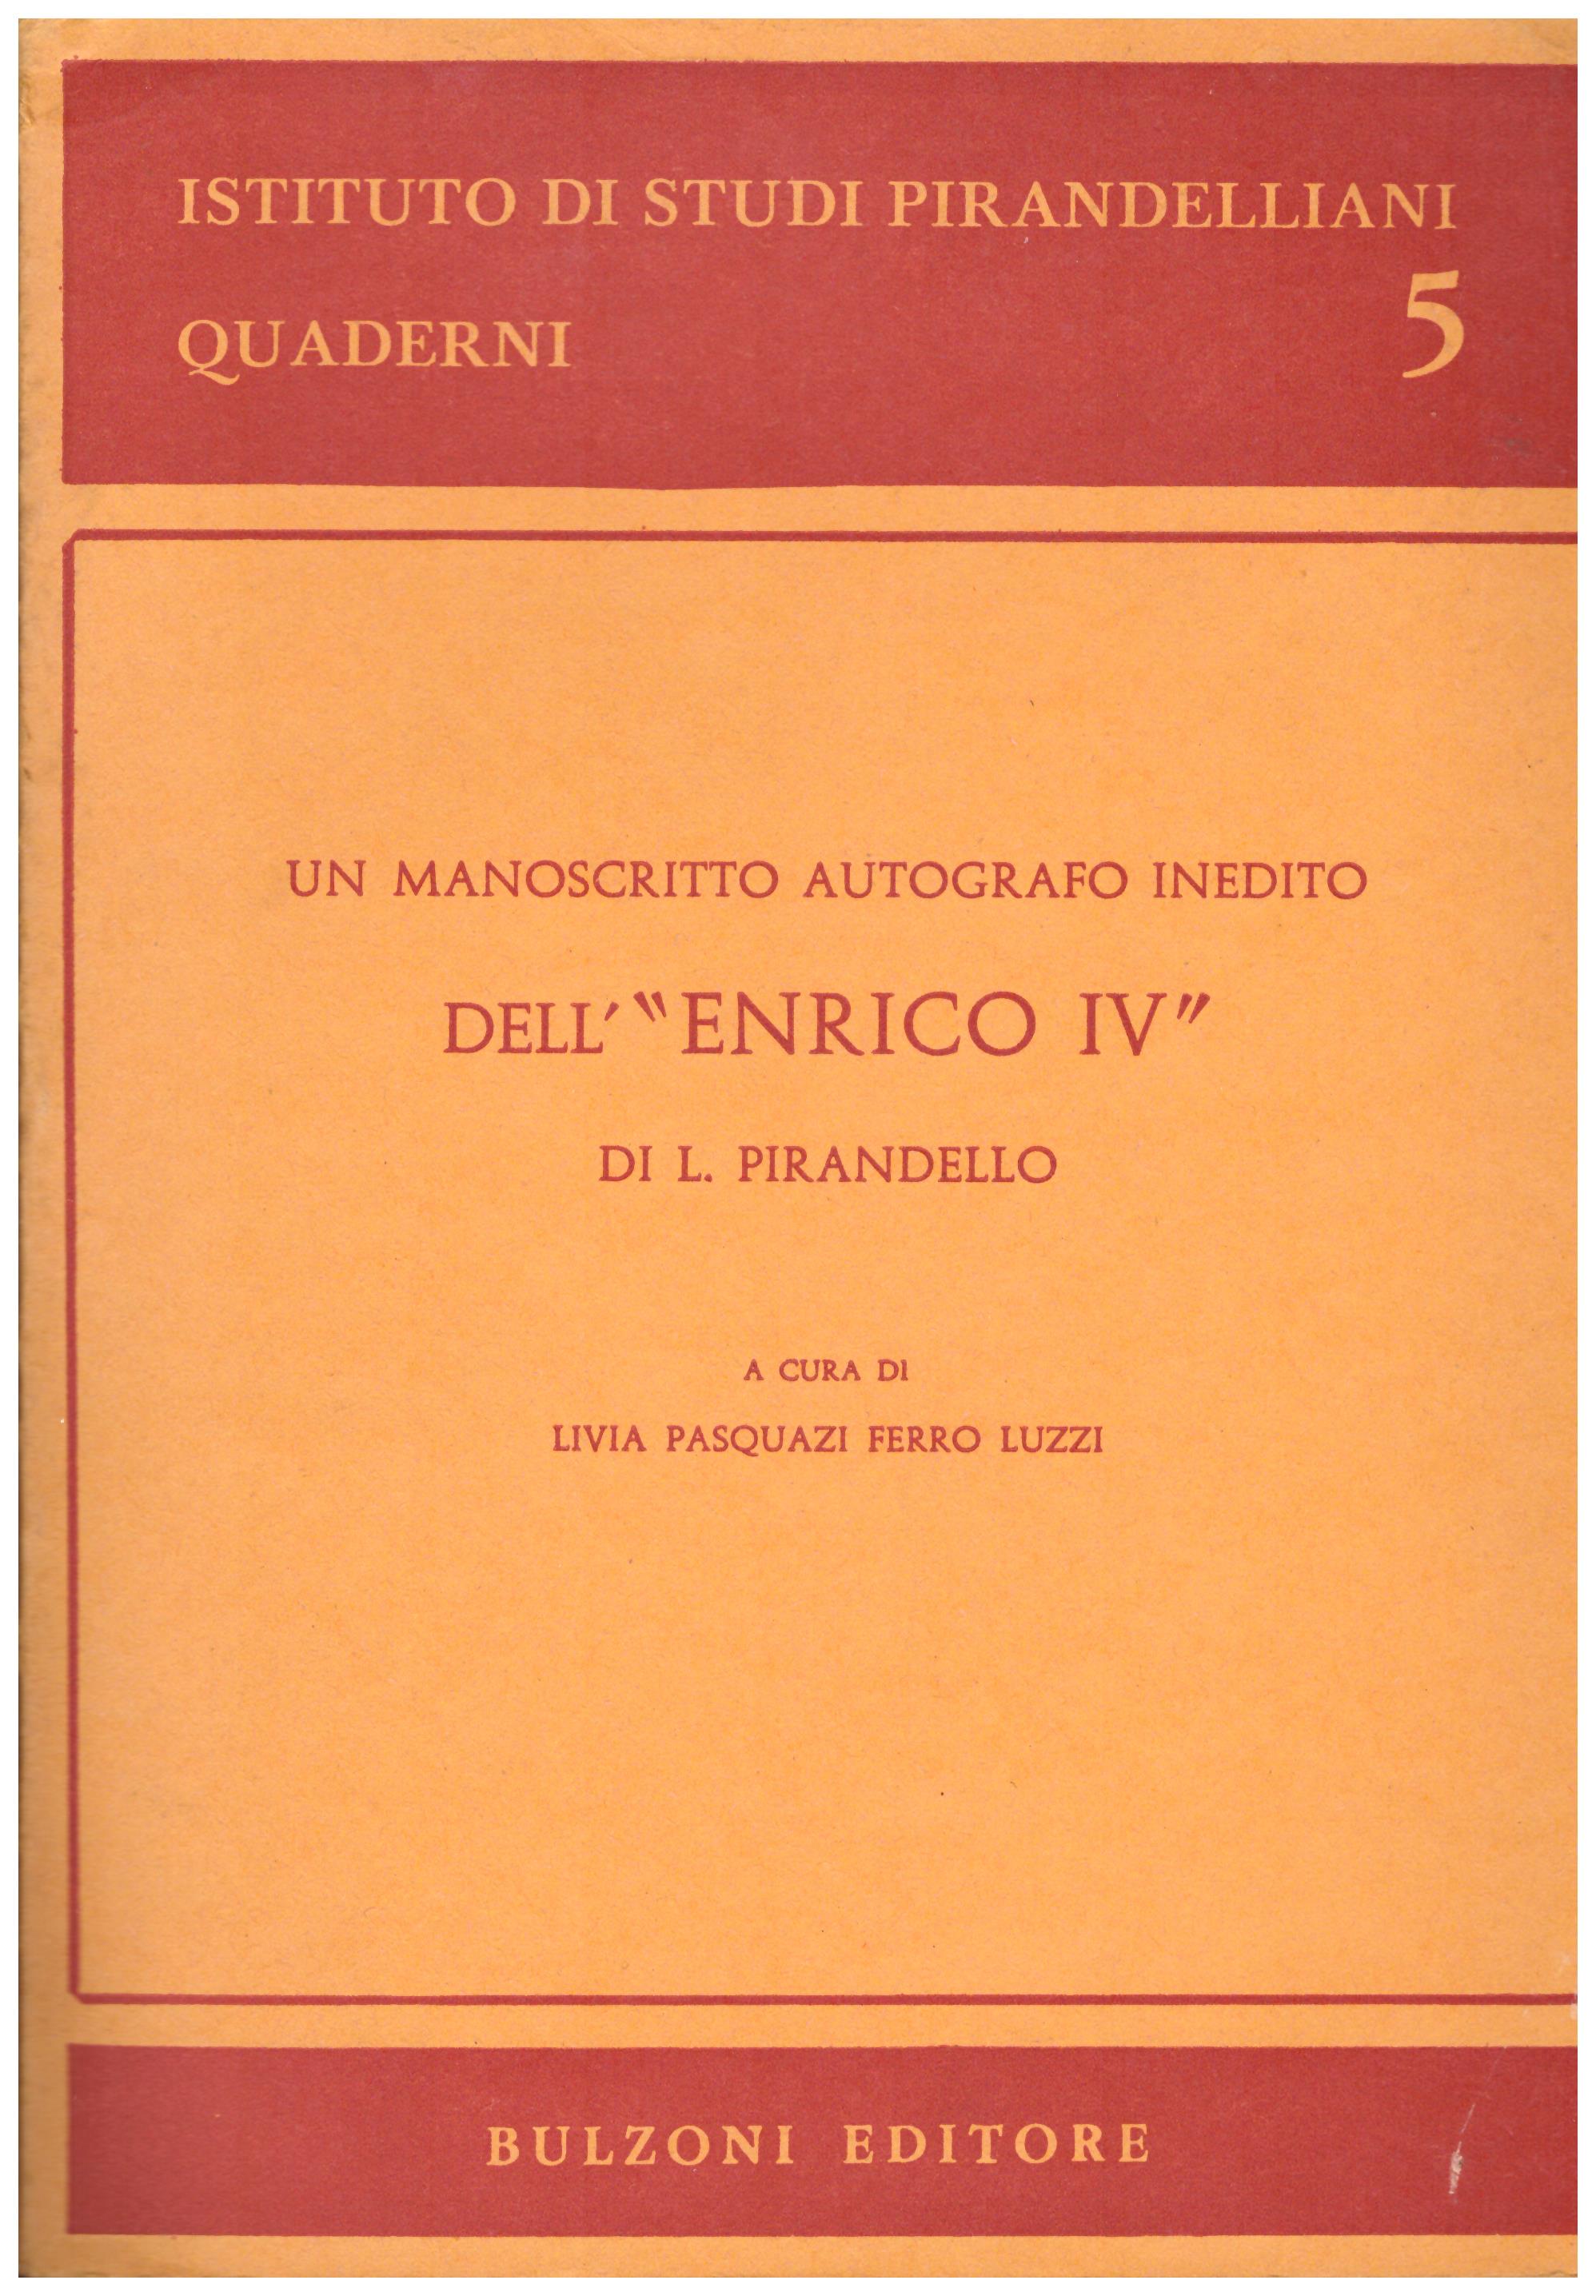 Un manoscritto autografo inedito dell' "Enrico IV" di L. Pirandello.